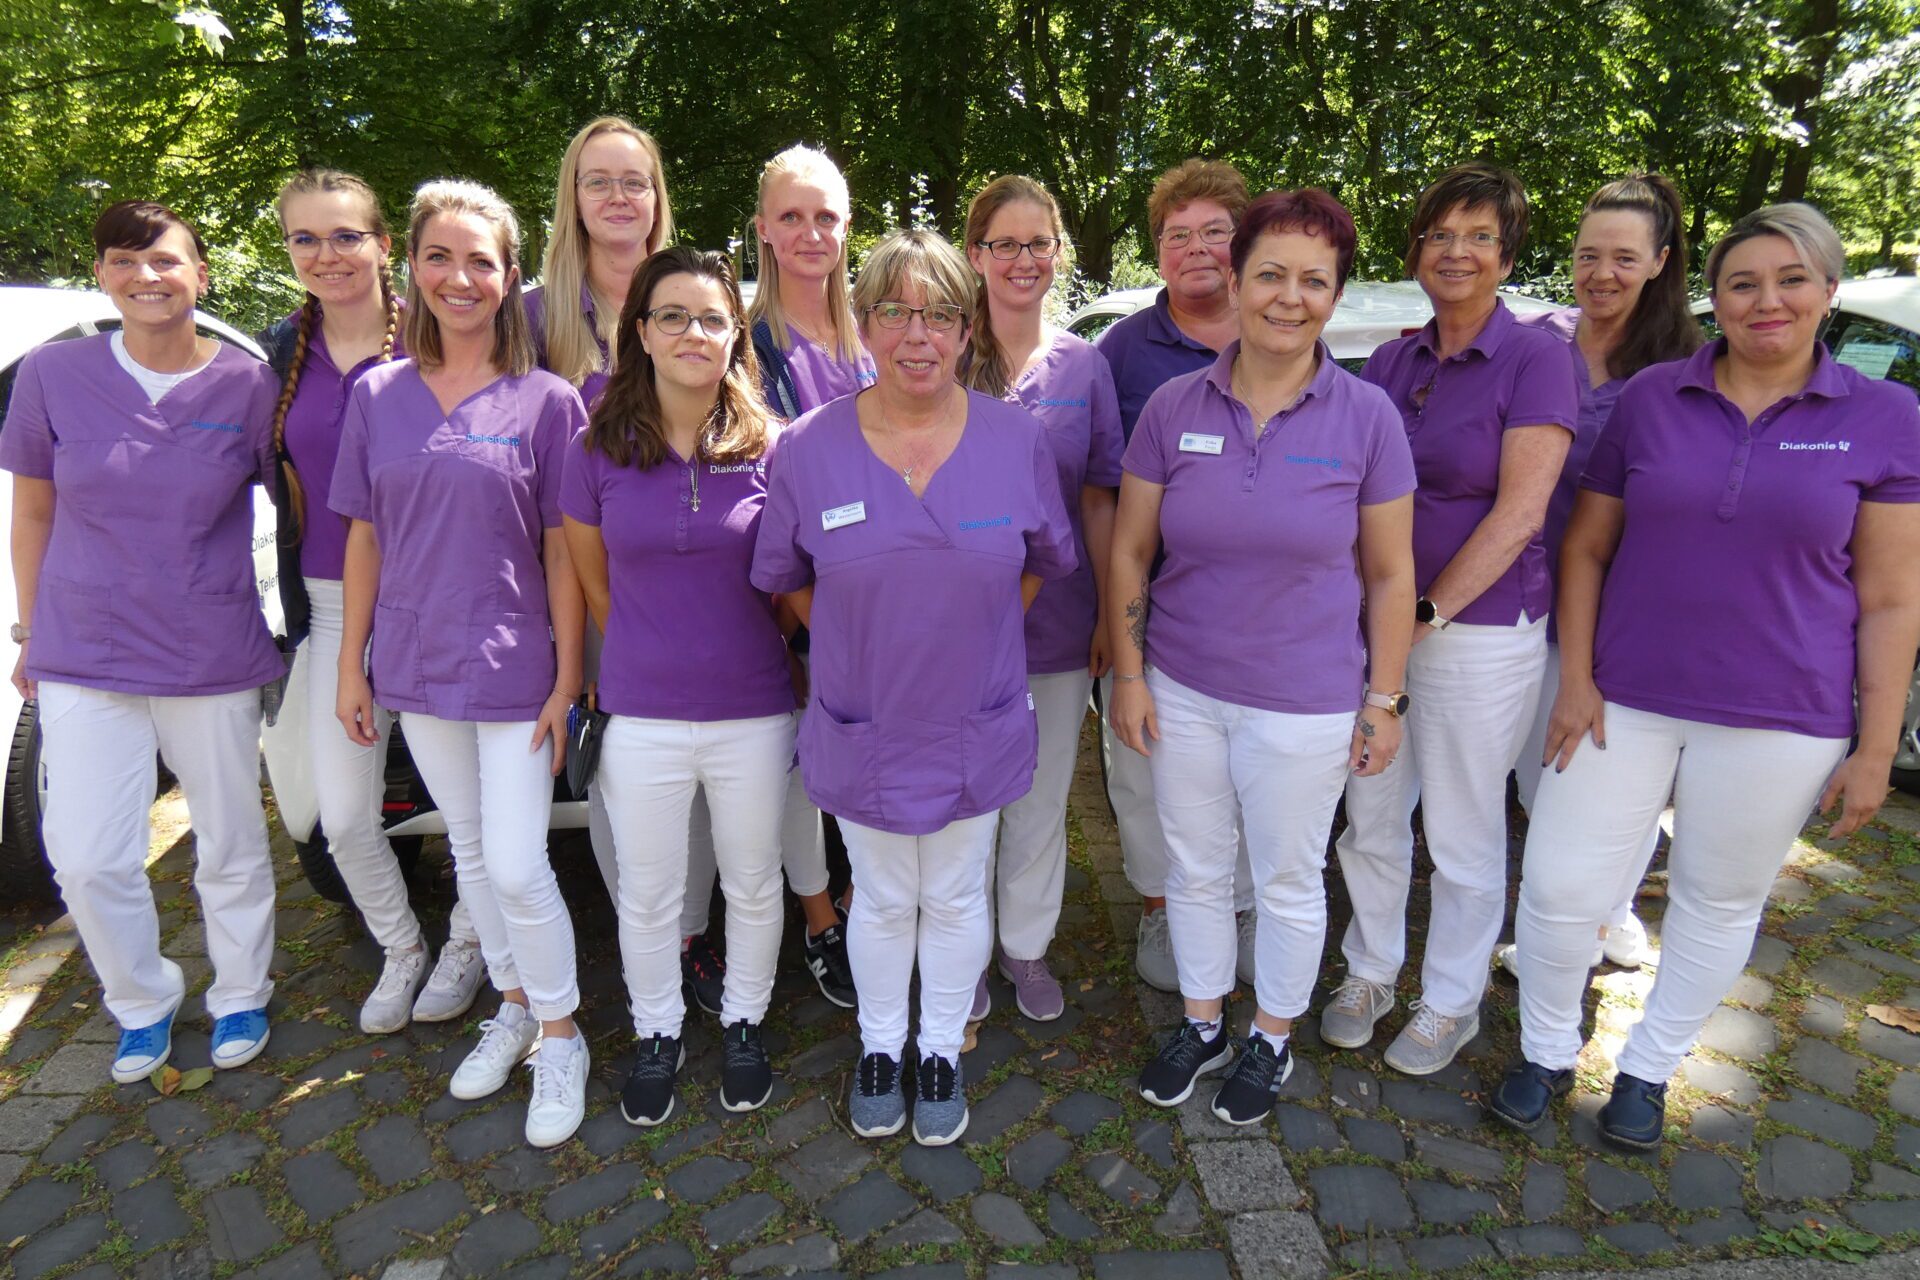 11Ein engagiertes Team von qualifizierten Mitarbeiterinnen der Diakonie Stadthagen.